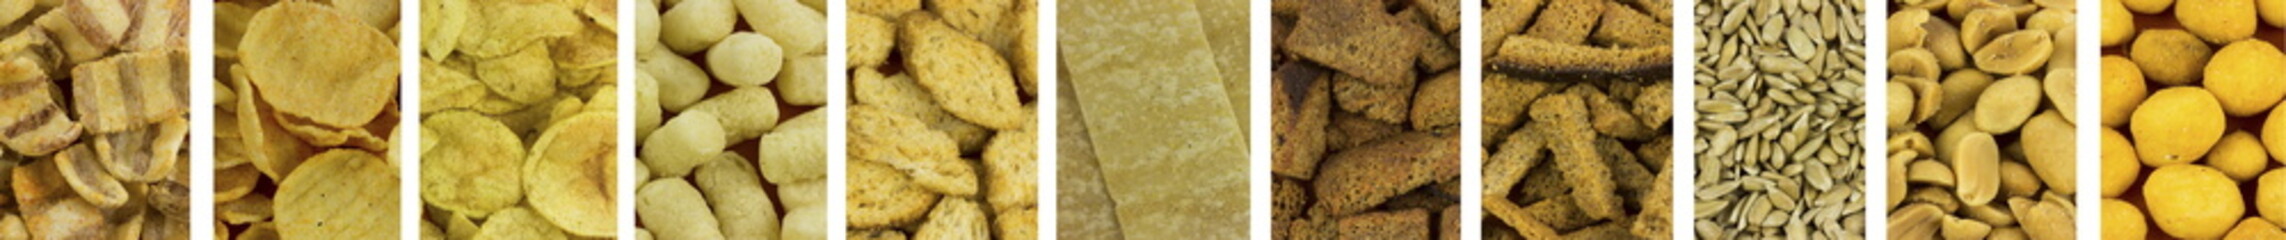 Snack, nut, potato chips  pattern. Food background. 